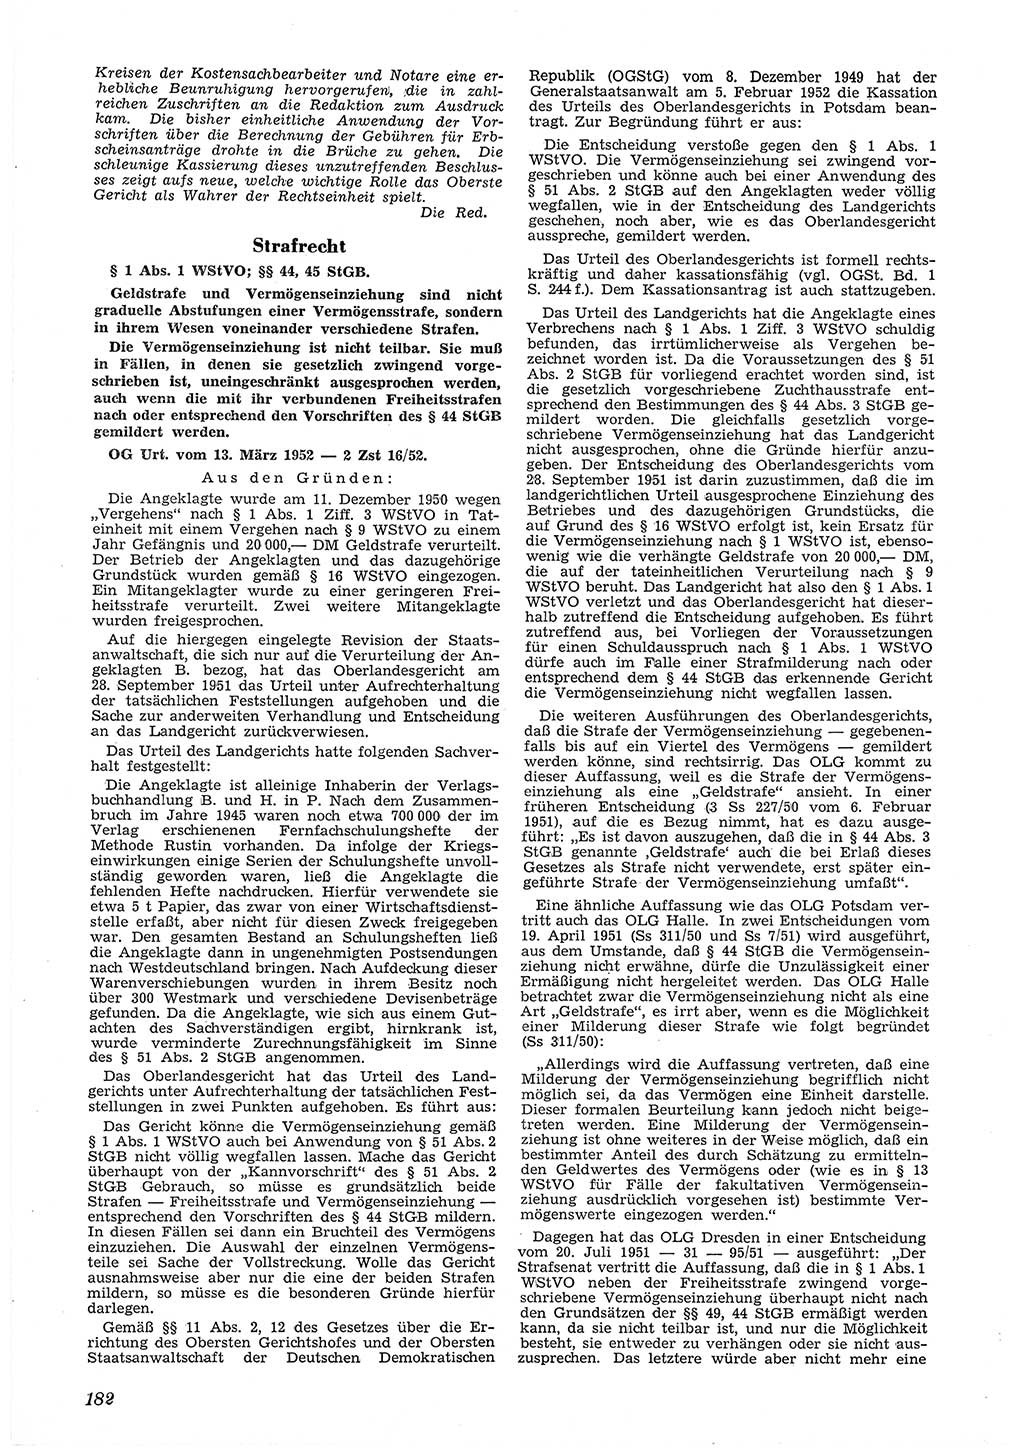 Neue Justiz (NJ), Zeitschrift für Recht und Rechtswissenschaft [Deutsche Demokratische Republik (DDR)], 6. Jahrgang 1952, Seite 182 (NJ DDR 1952, S. 182)